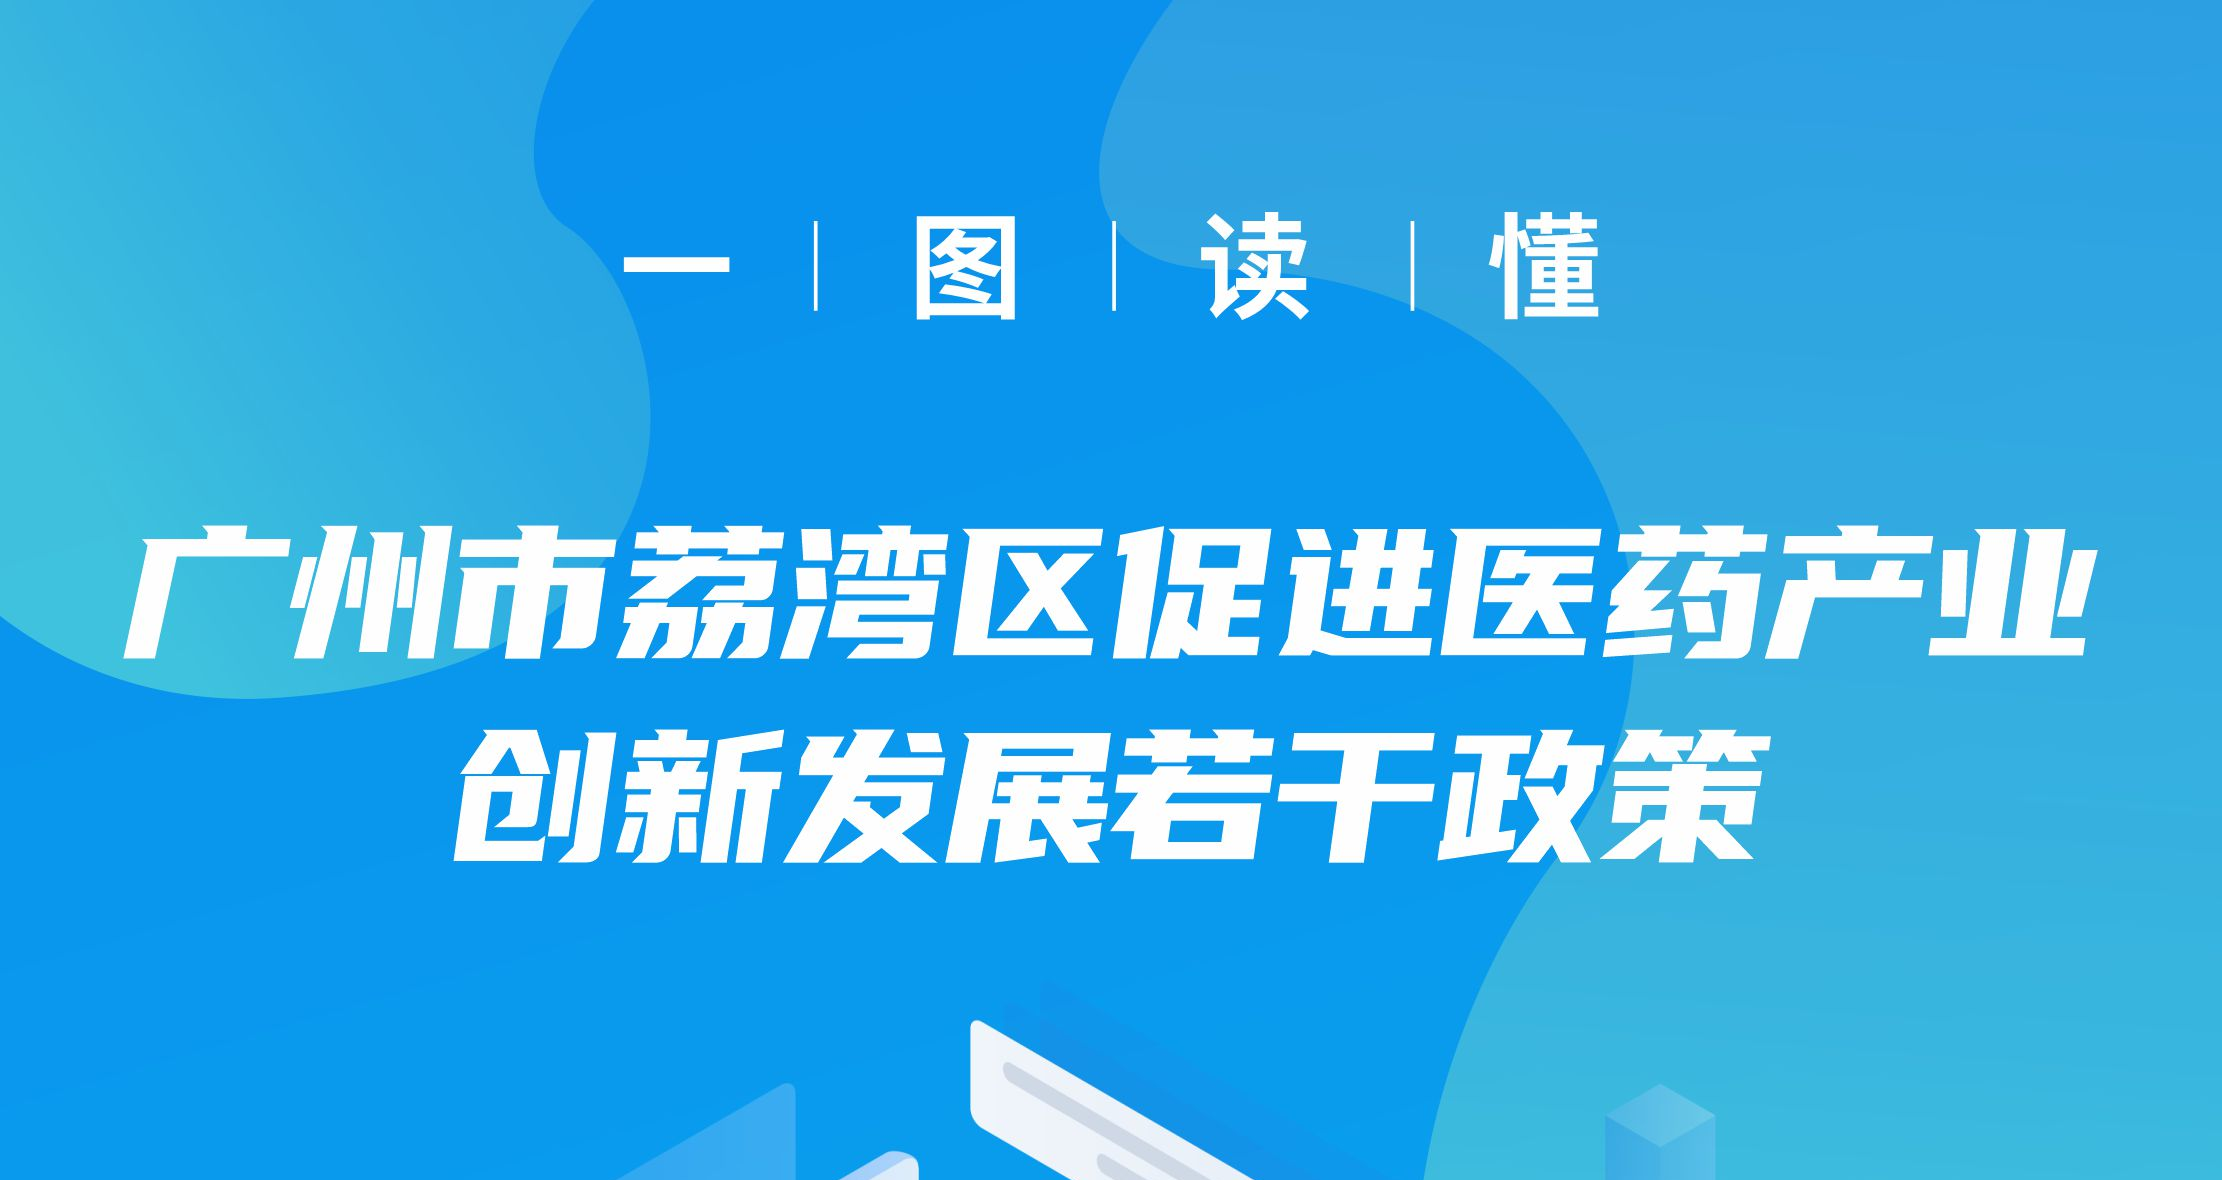 【一图读懂】《广州市荔湾区促进医药产业创新发展若干政策》政策解读